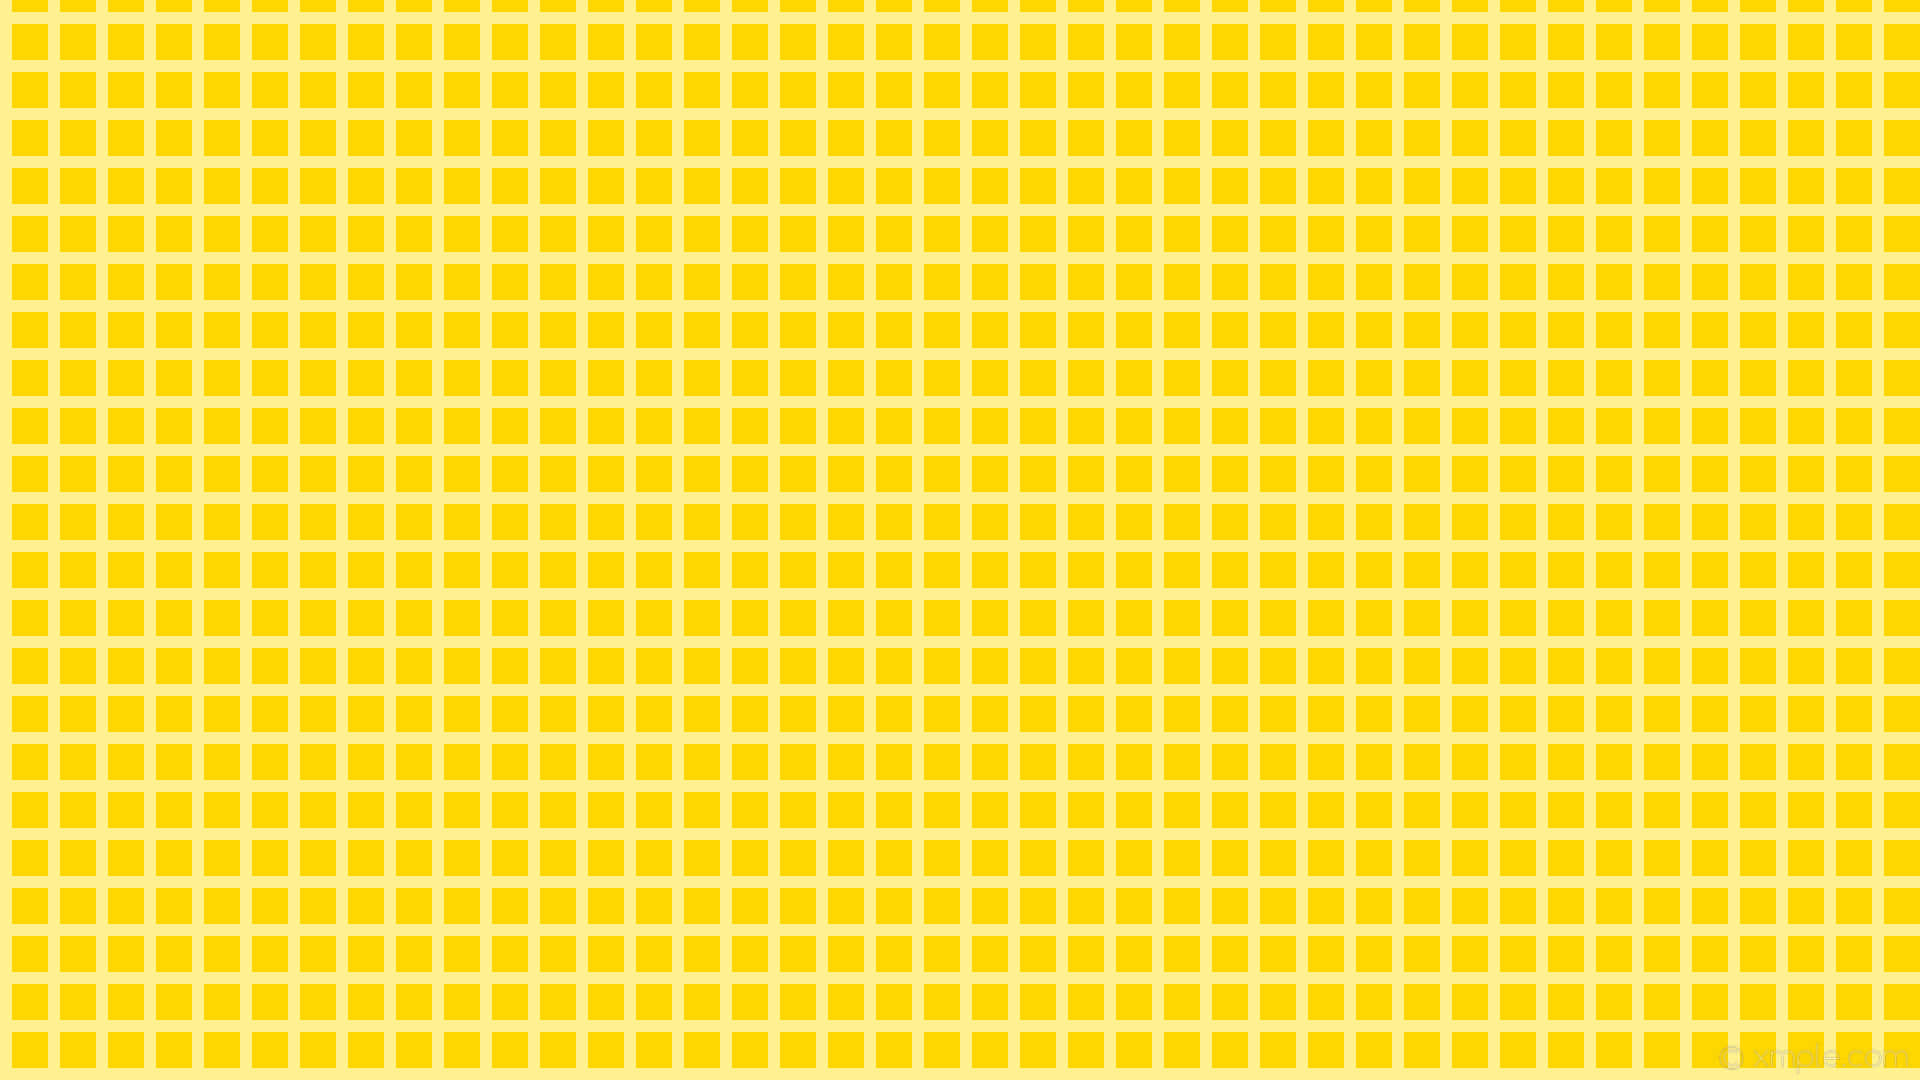 Hvid pude på en livlig gul ruteret æstetik Wallpaper